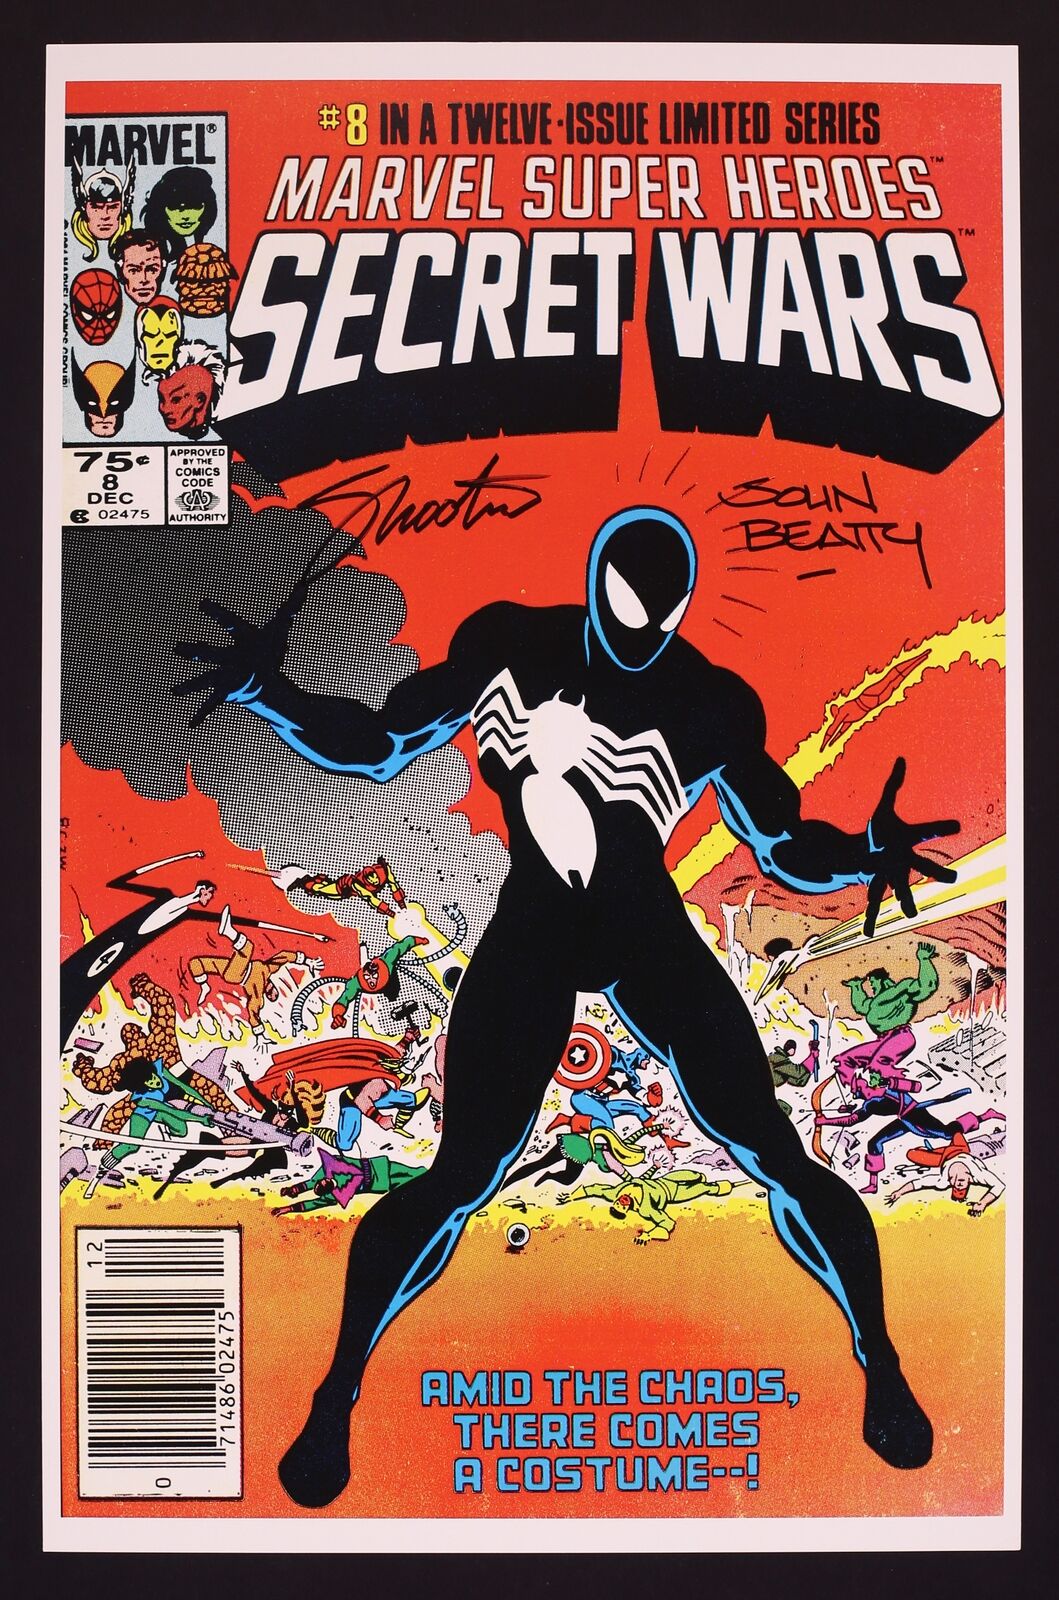 Marvel Super Heroes Secret Wars #8 Cover Print